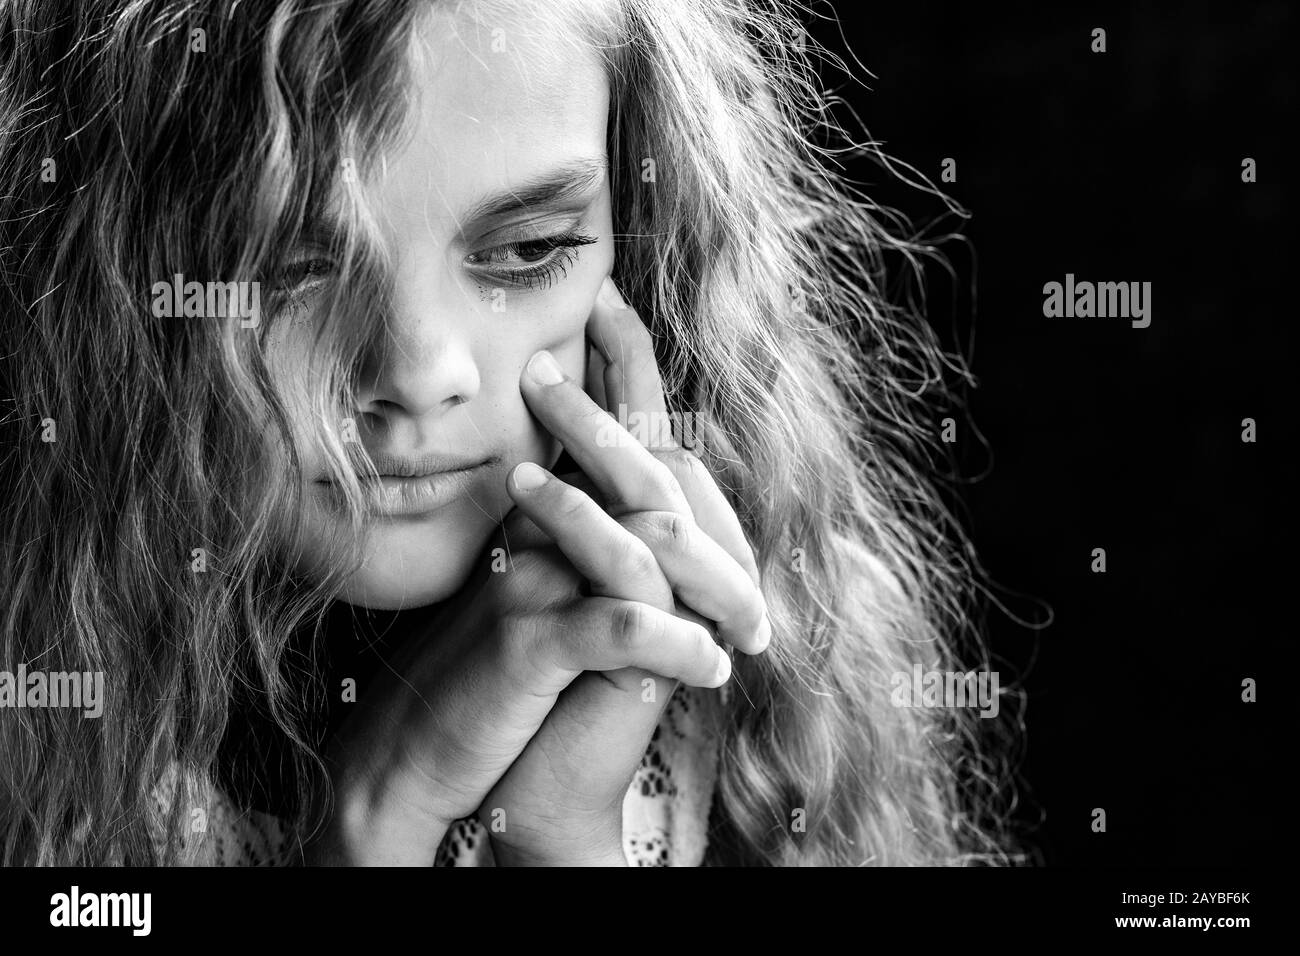 Psicológicos retrato en blanco y negro de una chica sobre un fondo negro Foto de stock